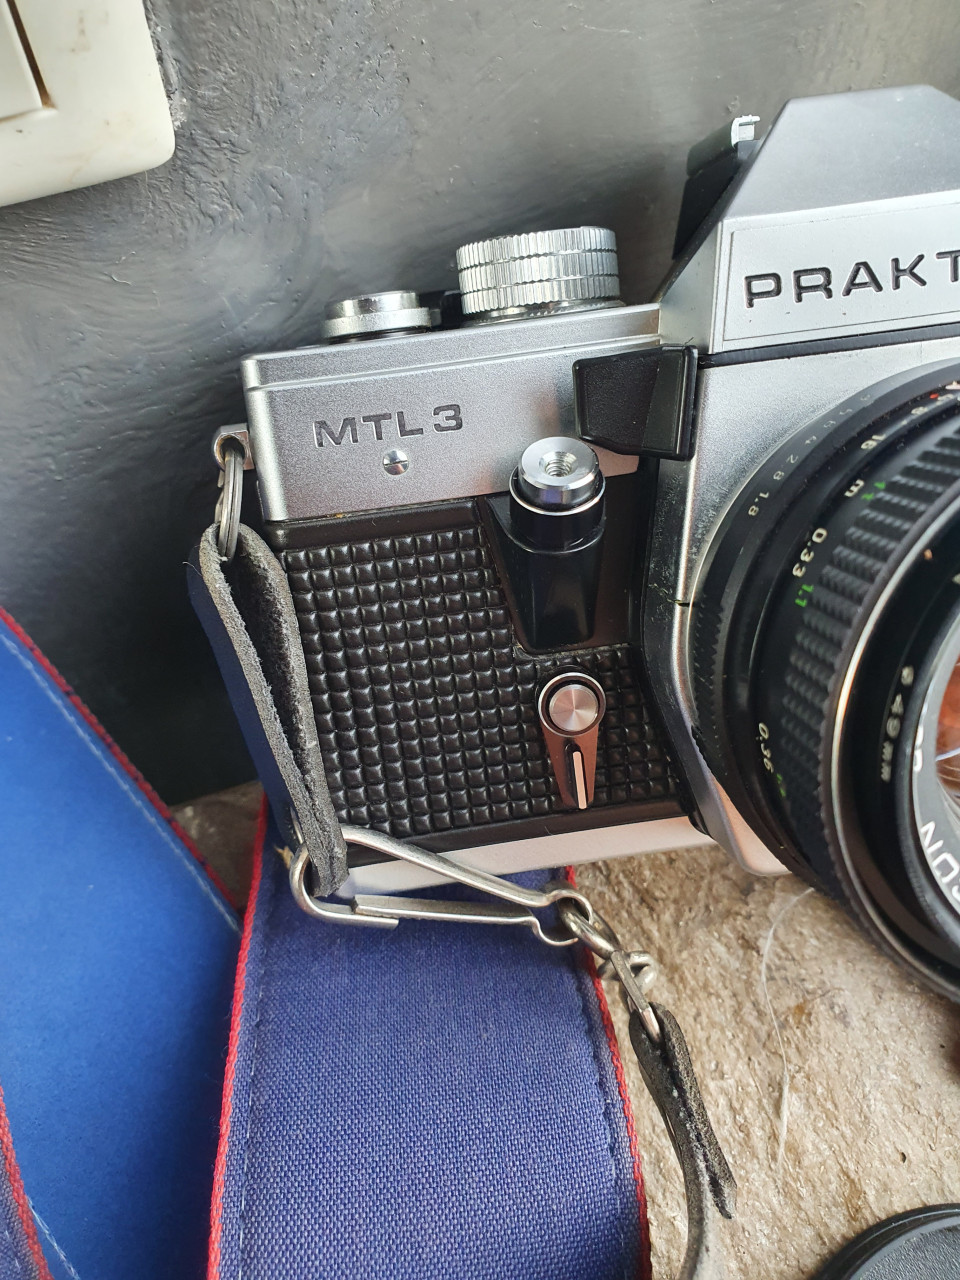 Prachtige vintage spiegelreflex camera, Praktica MTL3 incl. accessoires....